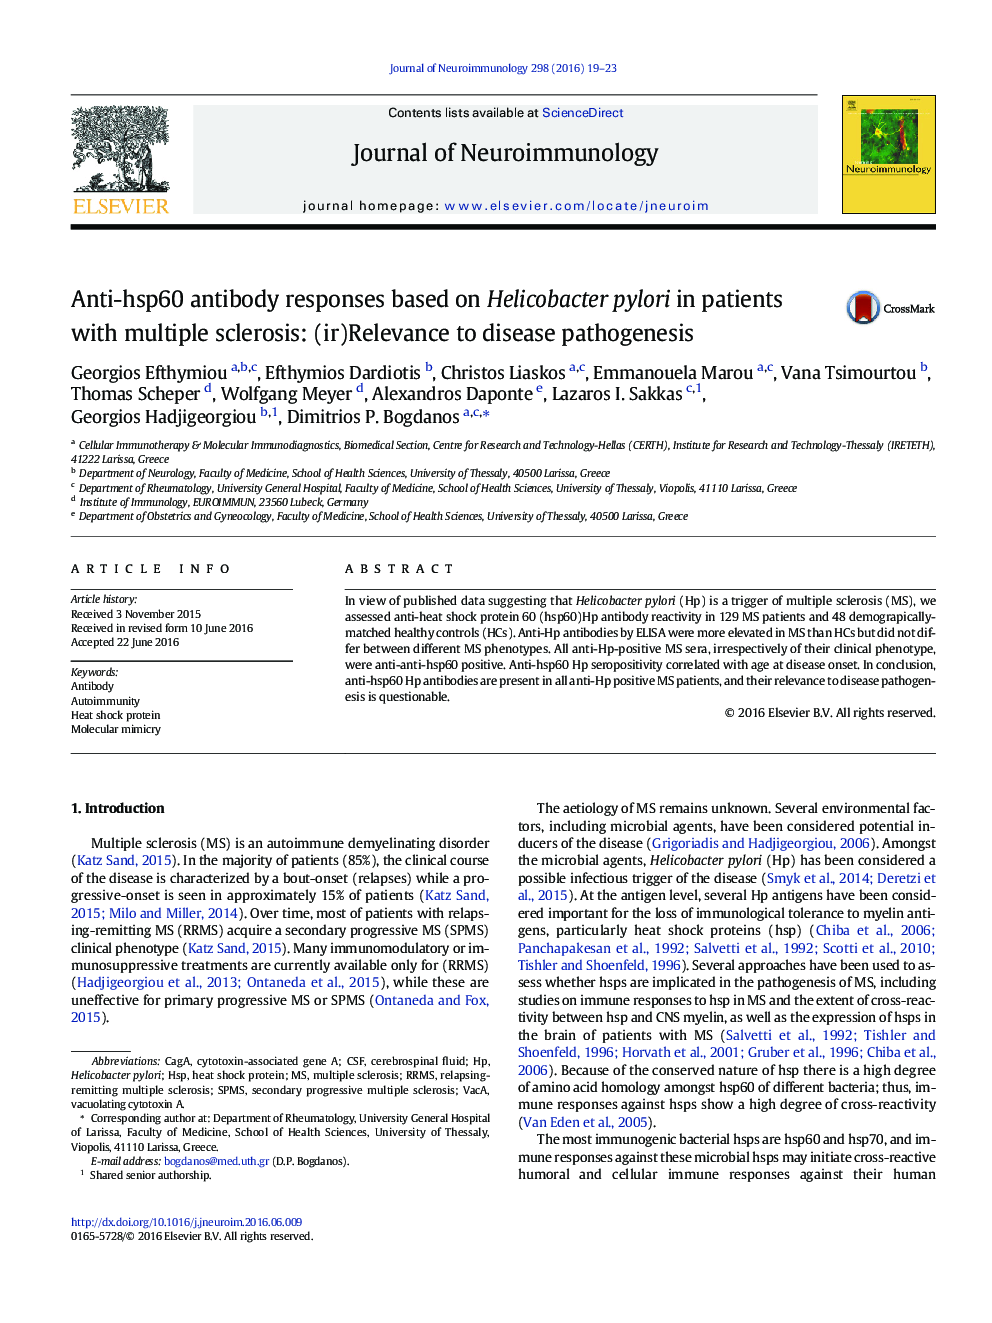 پاسخ های آنتی بادی ضد hsp60 بر اساس هلیکوباکتر پیلوری در بیماران مبتلا به ام اس: (عدم) ارتباط با پاتوژنز بیماری